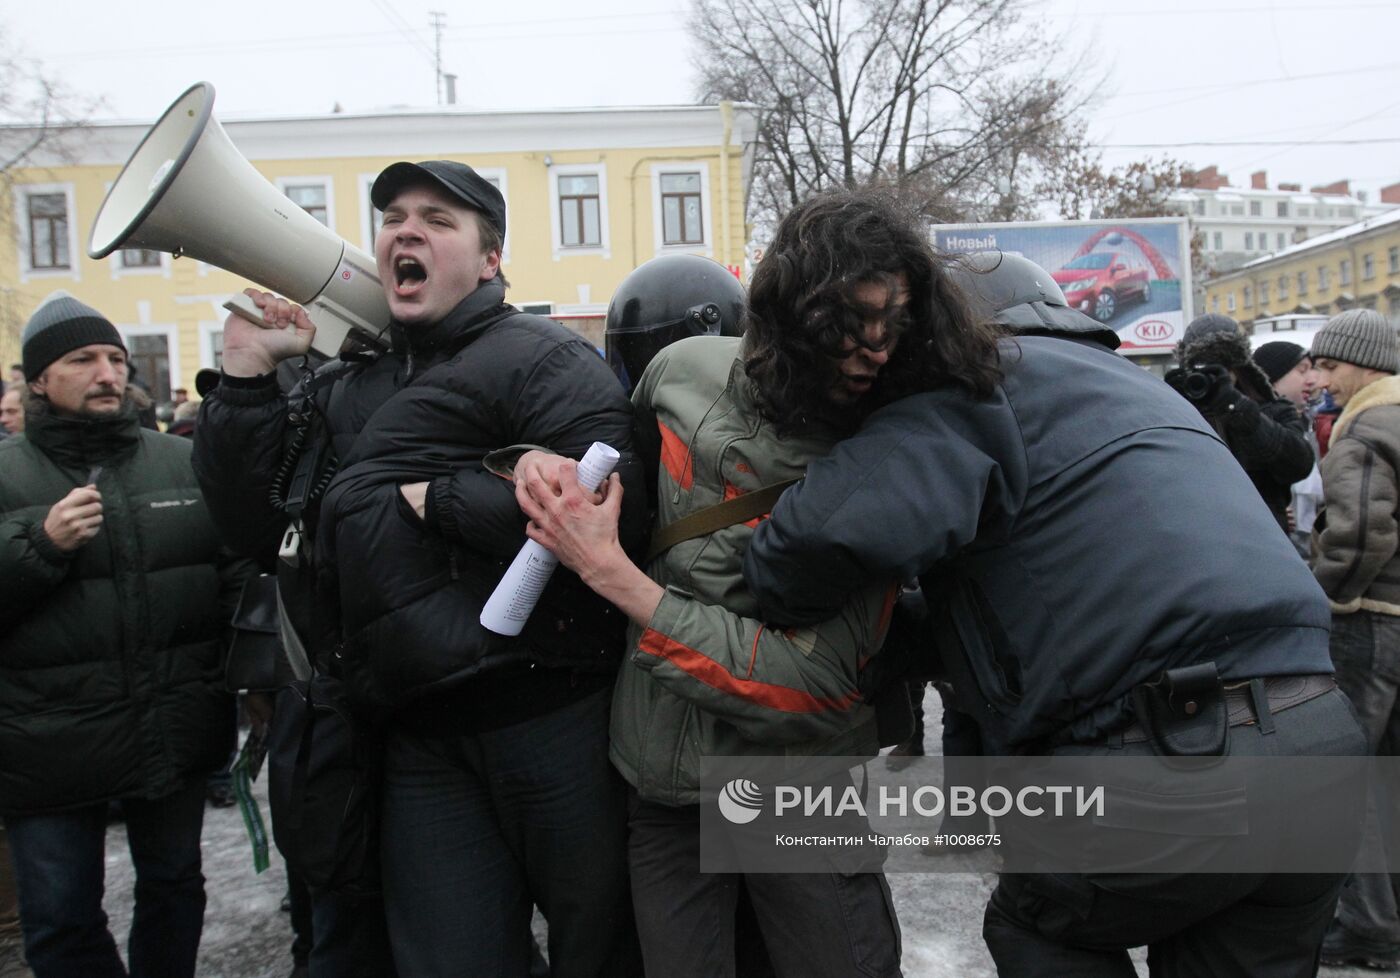 Массовые акции в регионах России 24 декабря 2011 года